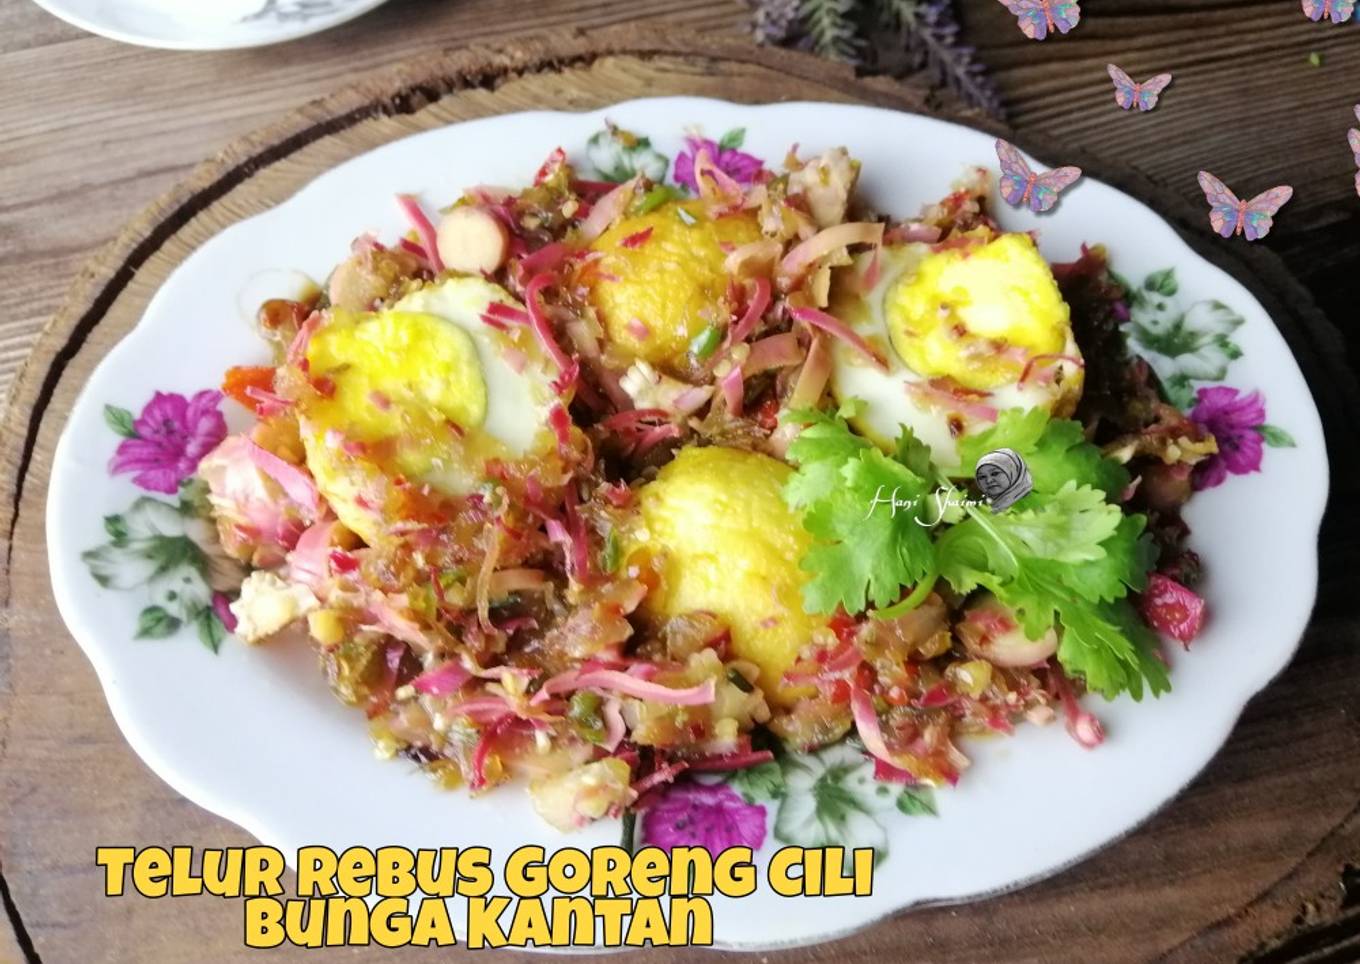 Resepi Telur rebus goreng cili bunga kantan yang Lazat dan Mudah